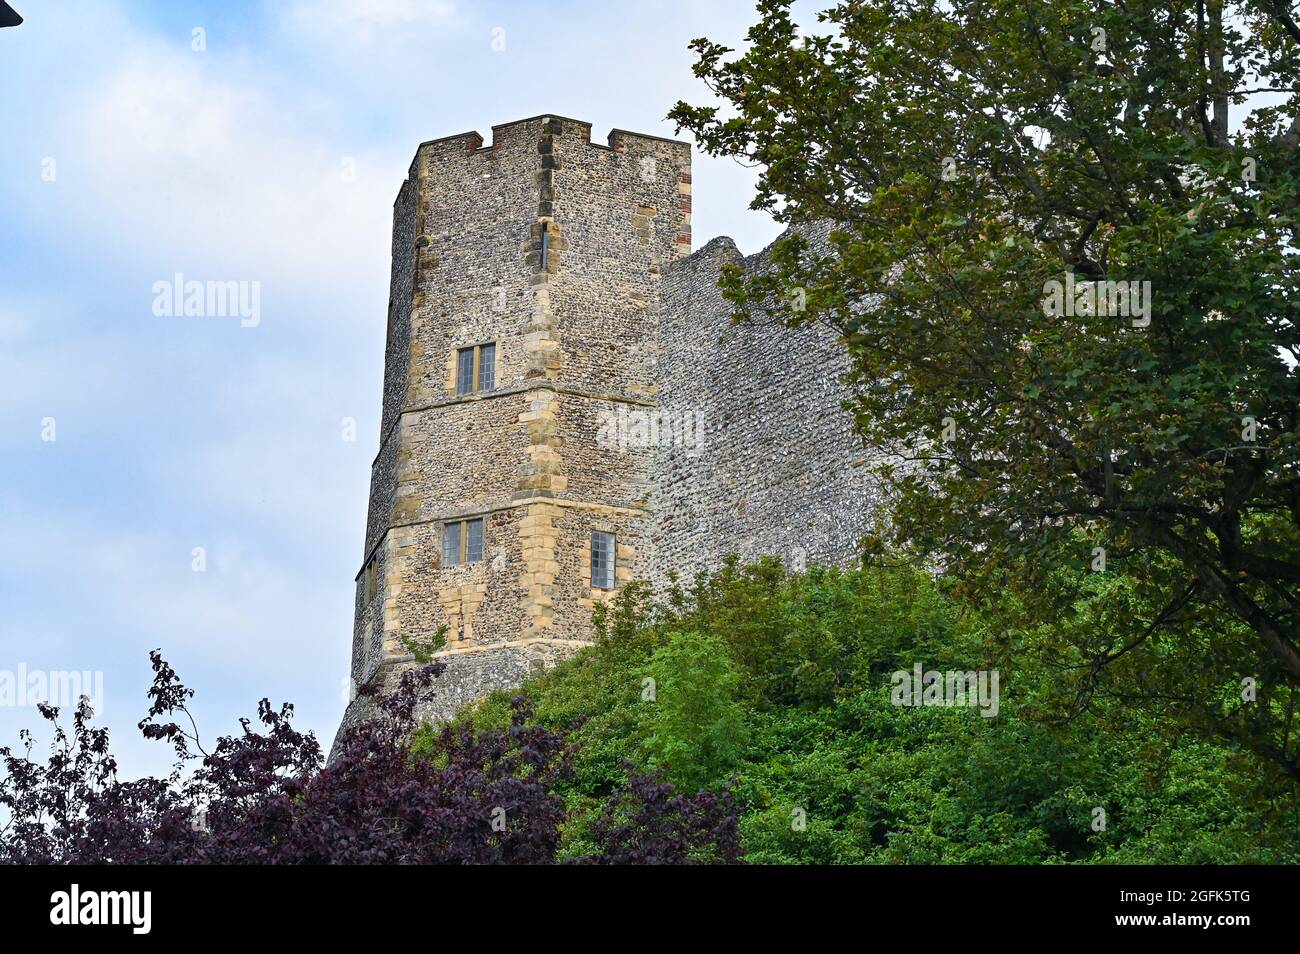 Lewes East Sussex UK - Château de Lewes et porte d'entrée - le château de Lewes est un château médiéval situé dans la ville de Lewes, dans l'est du Sussex, en Angleterre. Banque D'Images